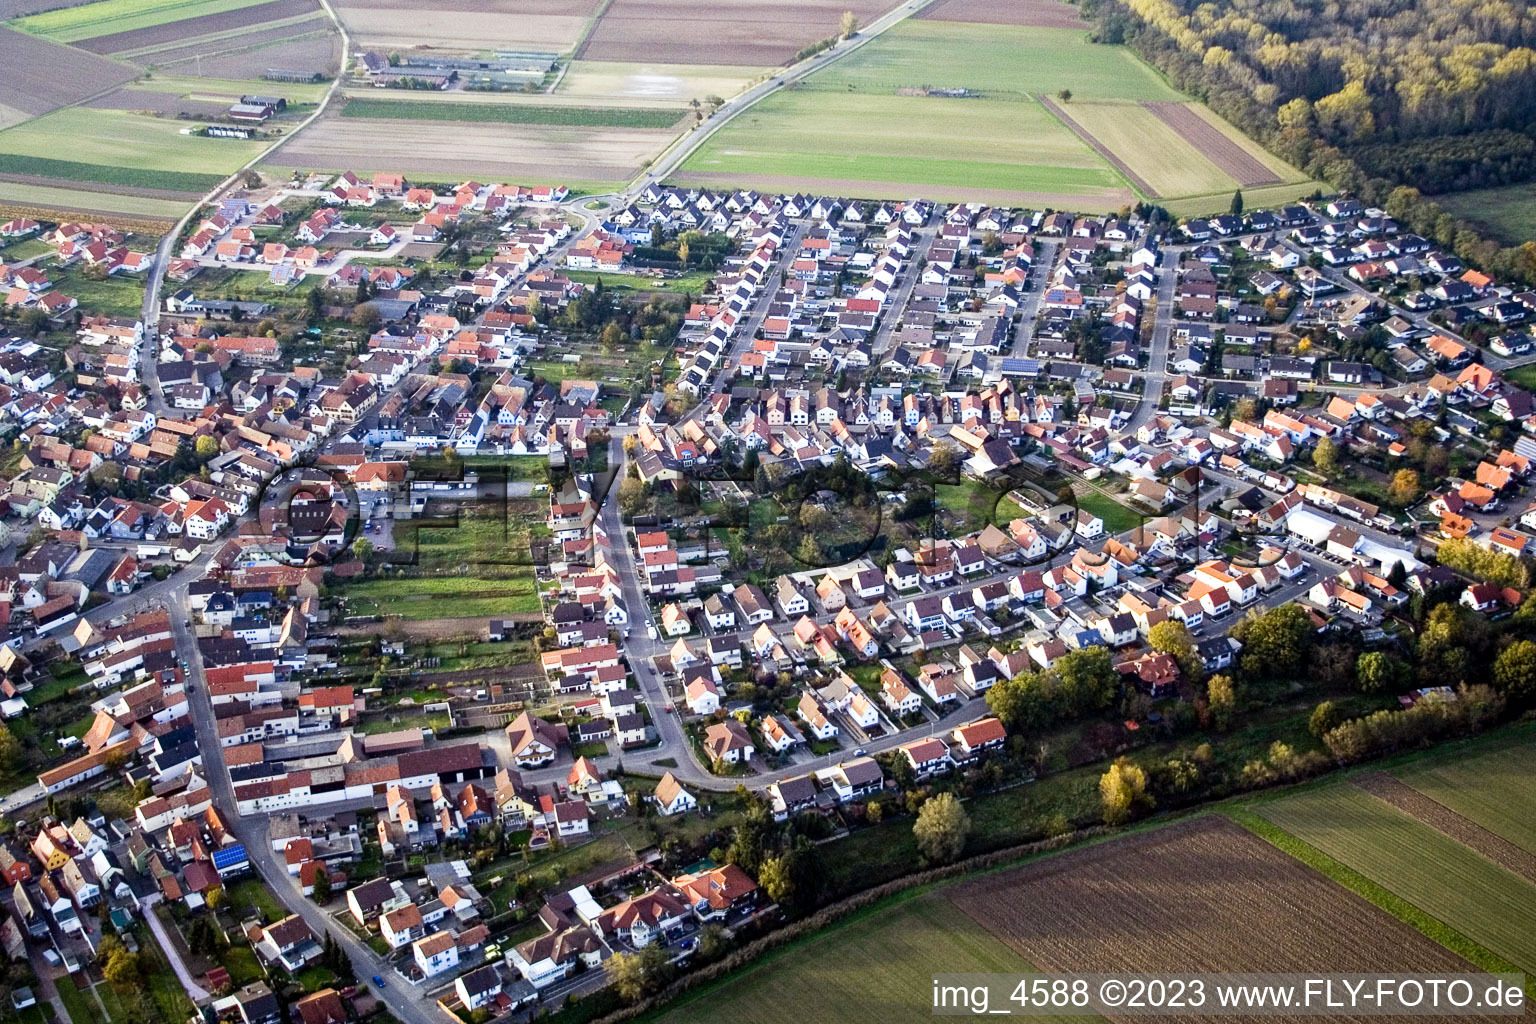 Vue aérienne de De l'est à Hördt dans le département Rhénanie-Palatinat, Allemagne